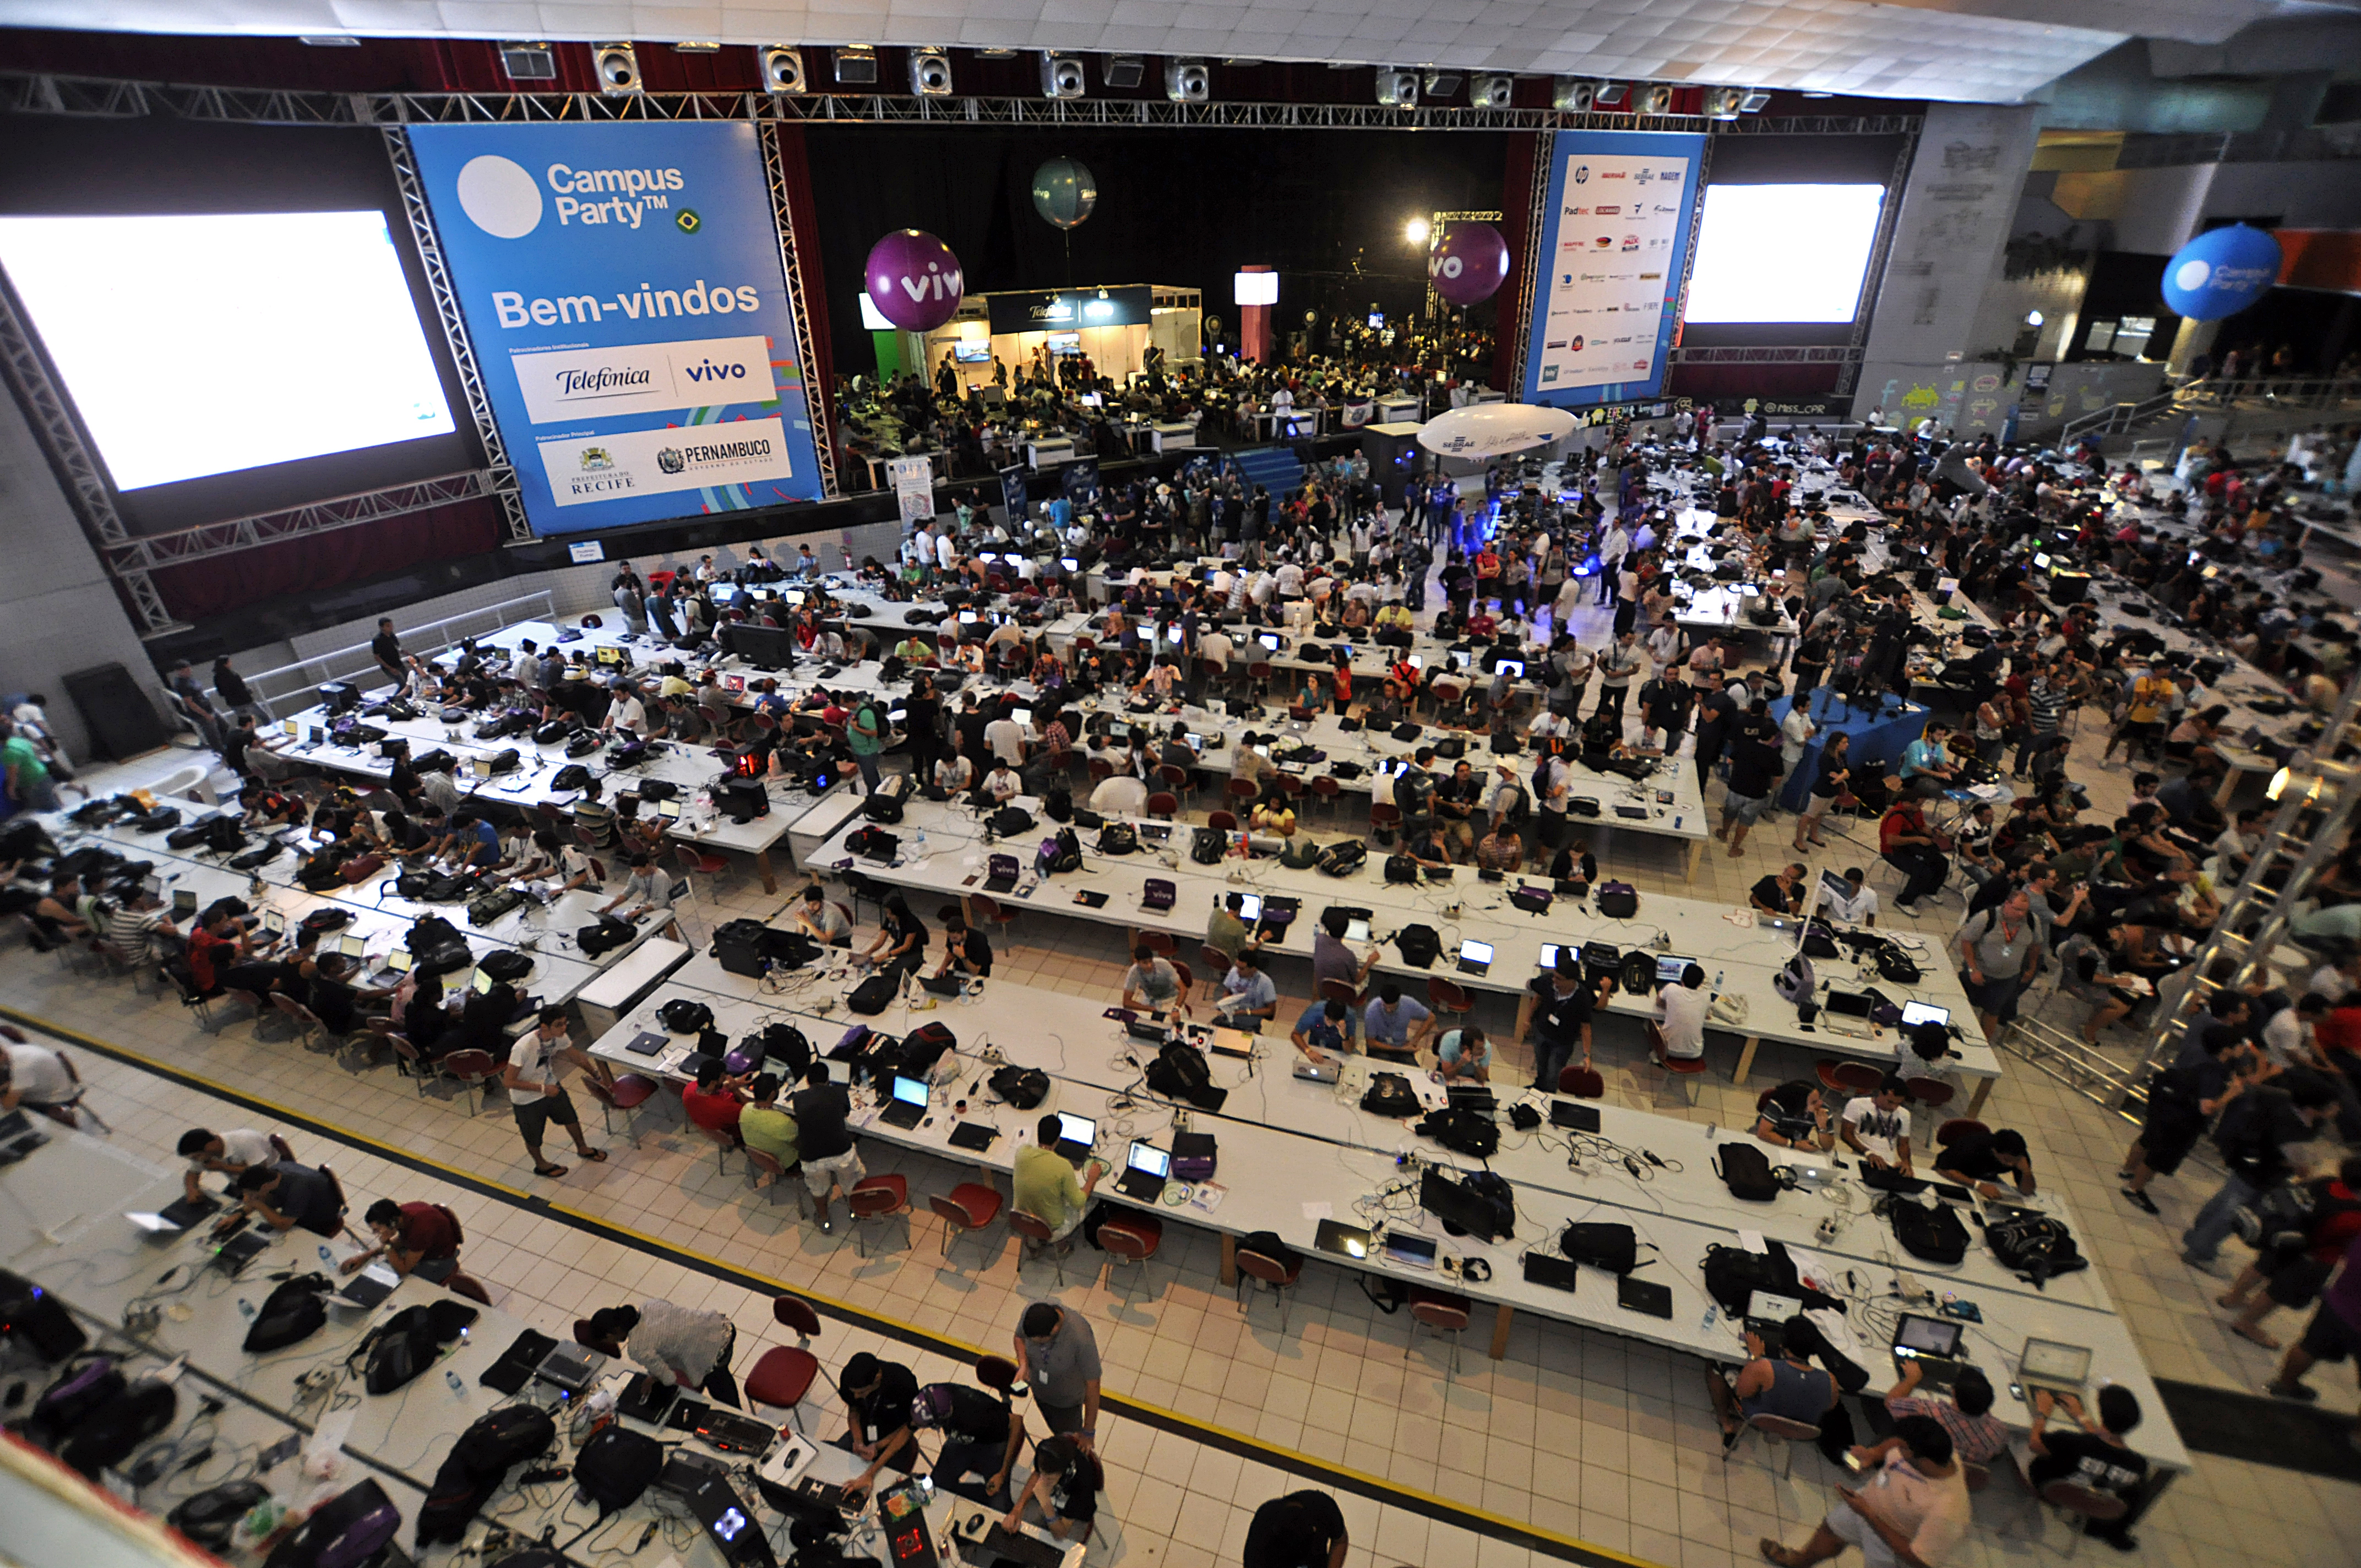 Se esperan 60 000 asistentes en Campus Party Mx #CPMX3